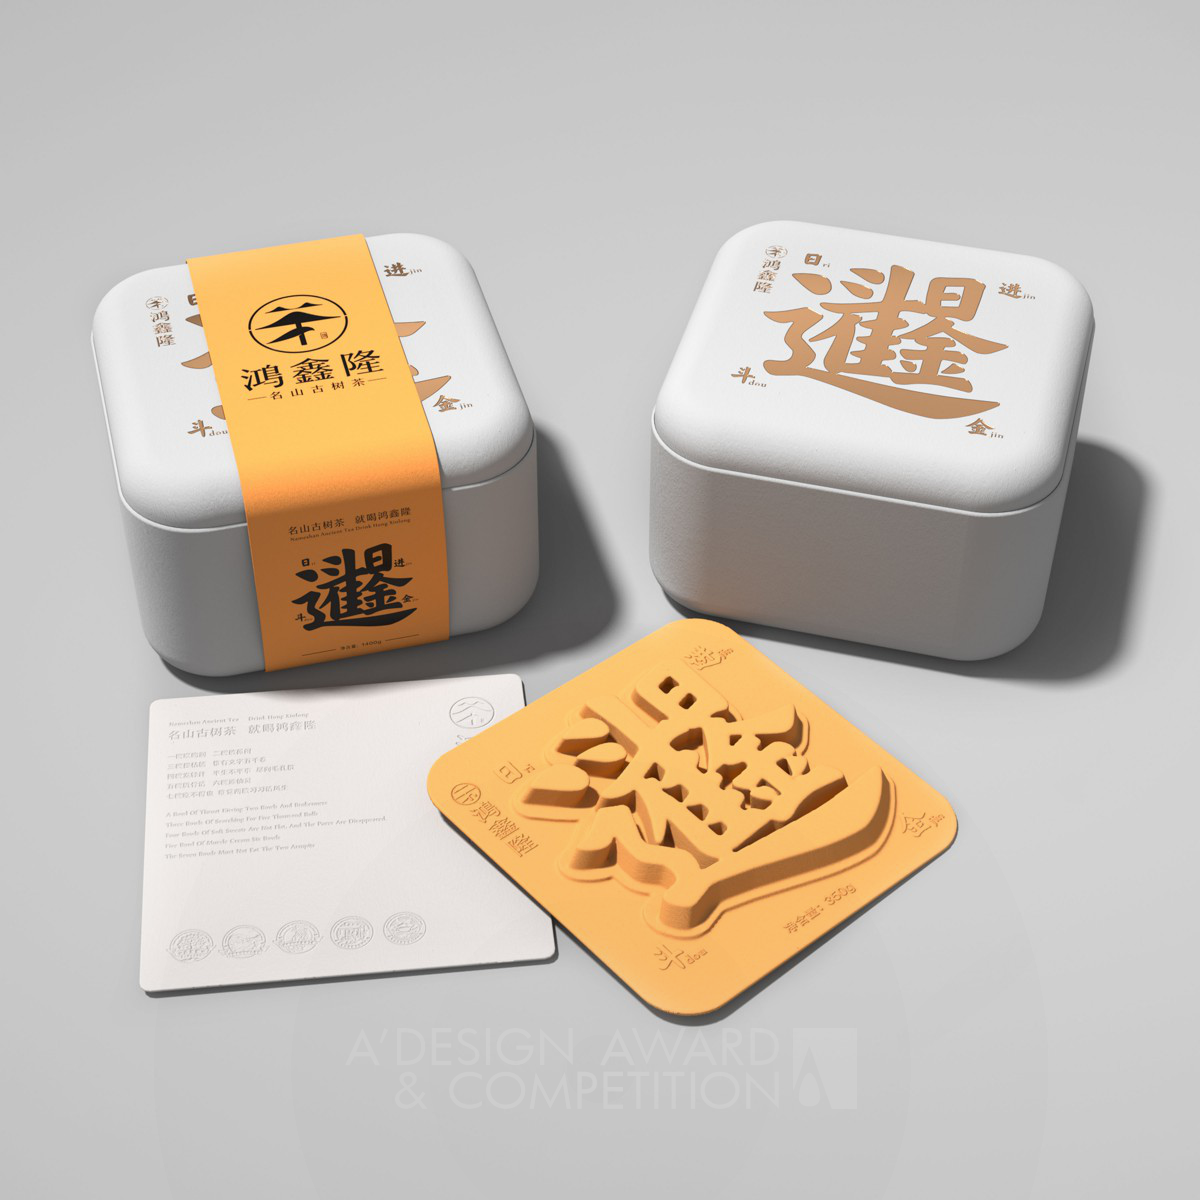 होंगशिंलोंग चाय: चीनी अक्षर संस्कृति की प्रेरणा से उत्पन्न नवाचारी पैकेजिंग डिजाइन